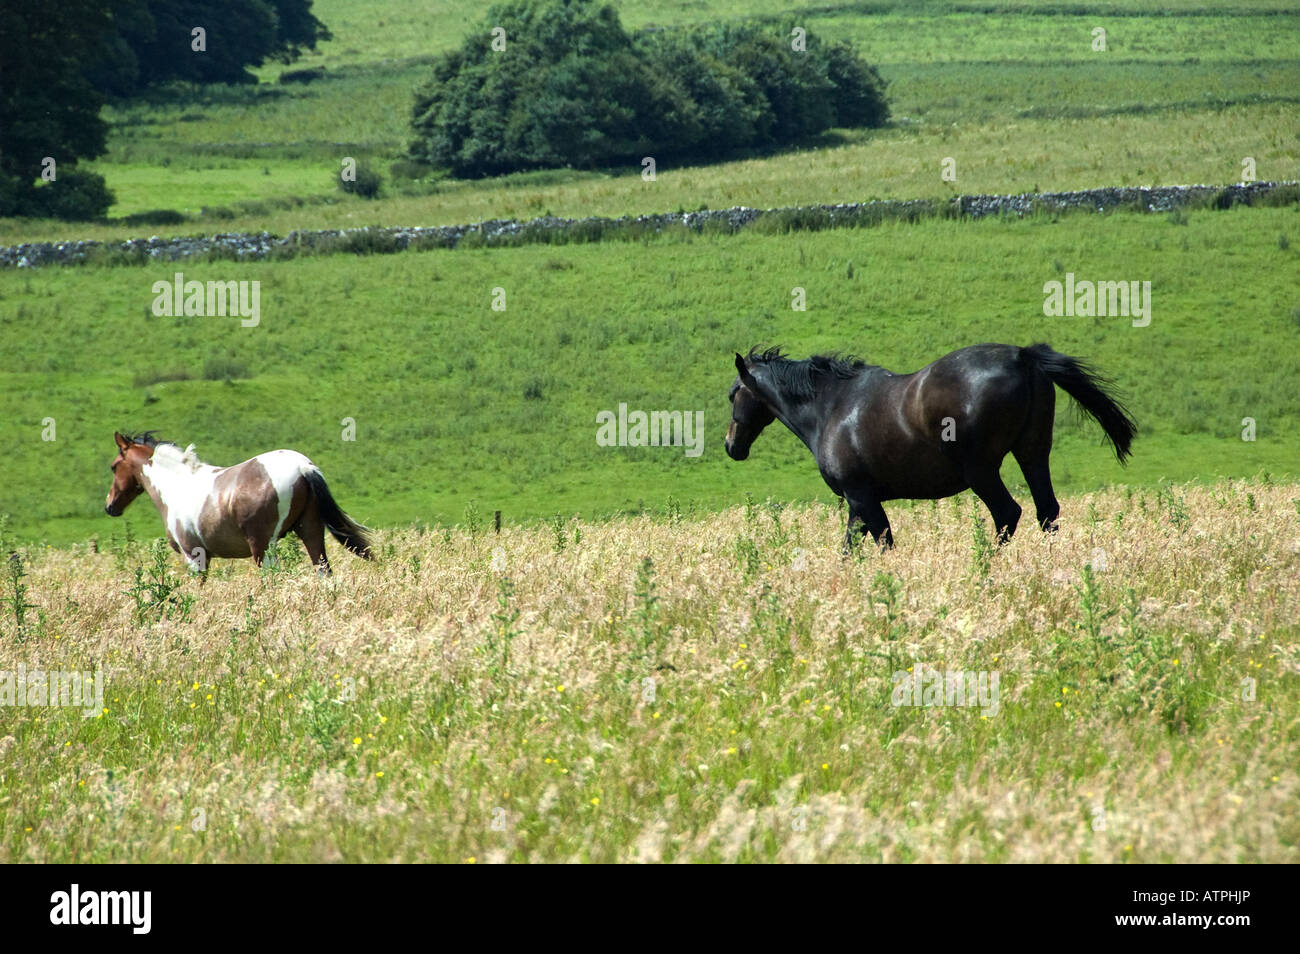 Two Horses walking across field Stock Photo